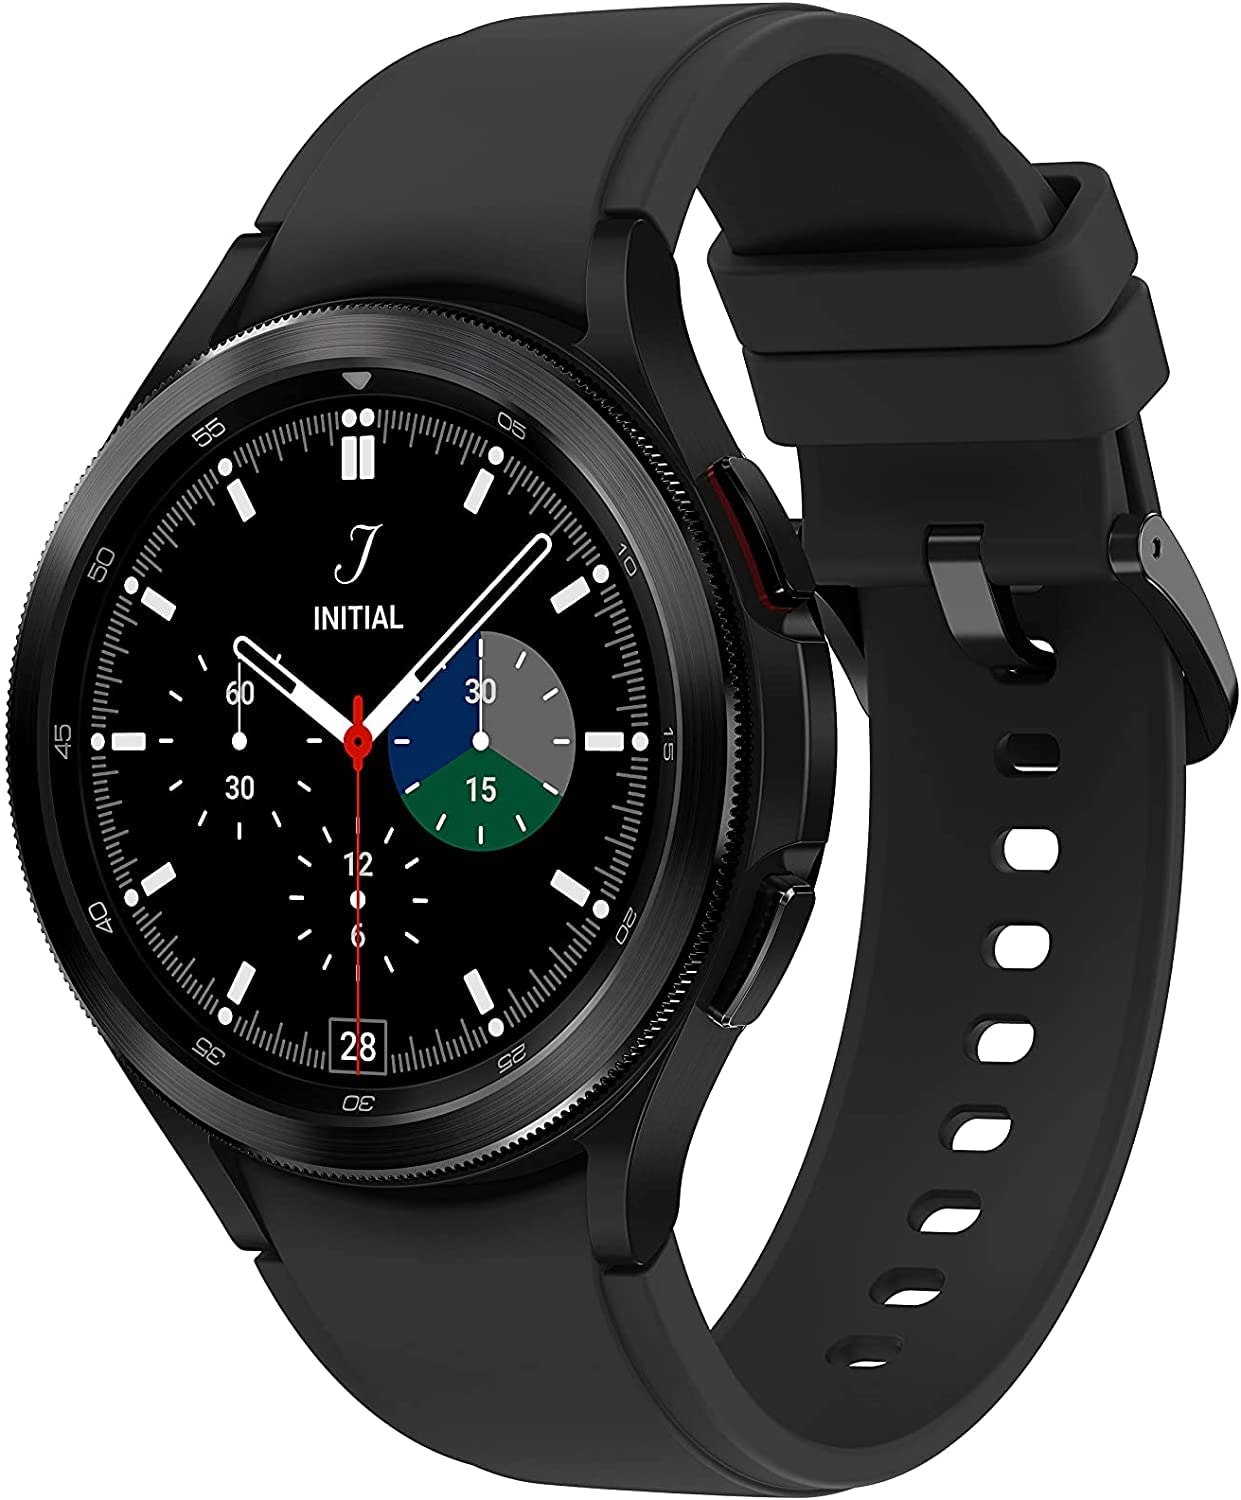 Samsung Electronics Galaxy Watch 4 Classic: Samsung Electronics Galaxy Watch 4 Classic là sự lựa chọn lý tưởng cho những người yêu thích sự sang trọng và đẳng cấp. Với thiết kế chất lượng và nhiều tính năng cao cấp, Samsung Electronics Galaxy Watch 4 Classic sẽ mang lại cho bạn cảm giác thoải mái và đẳng cấp mỗi khi sử dụng.